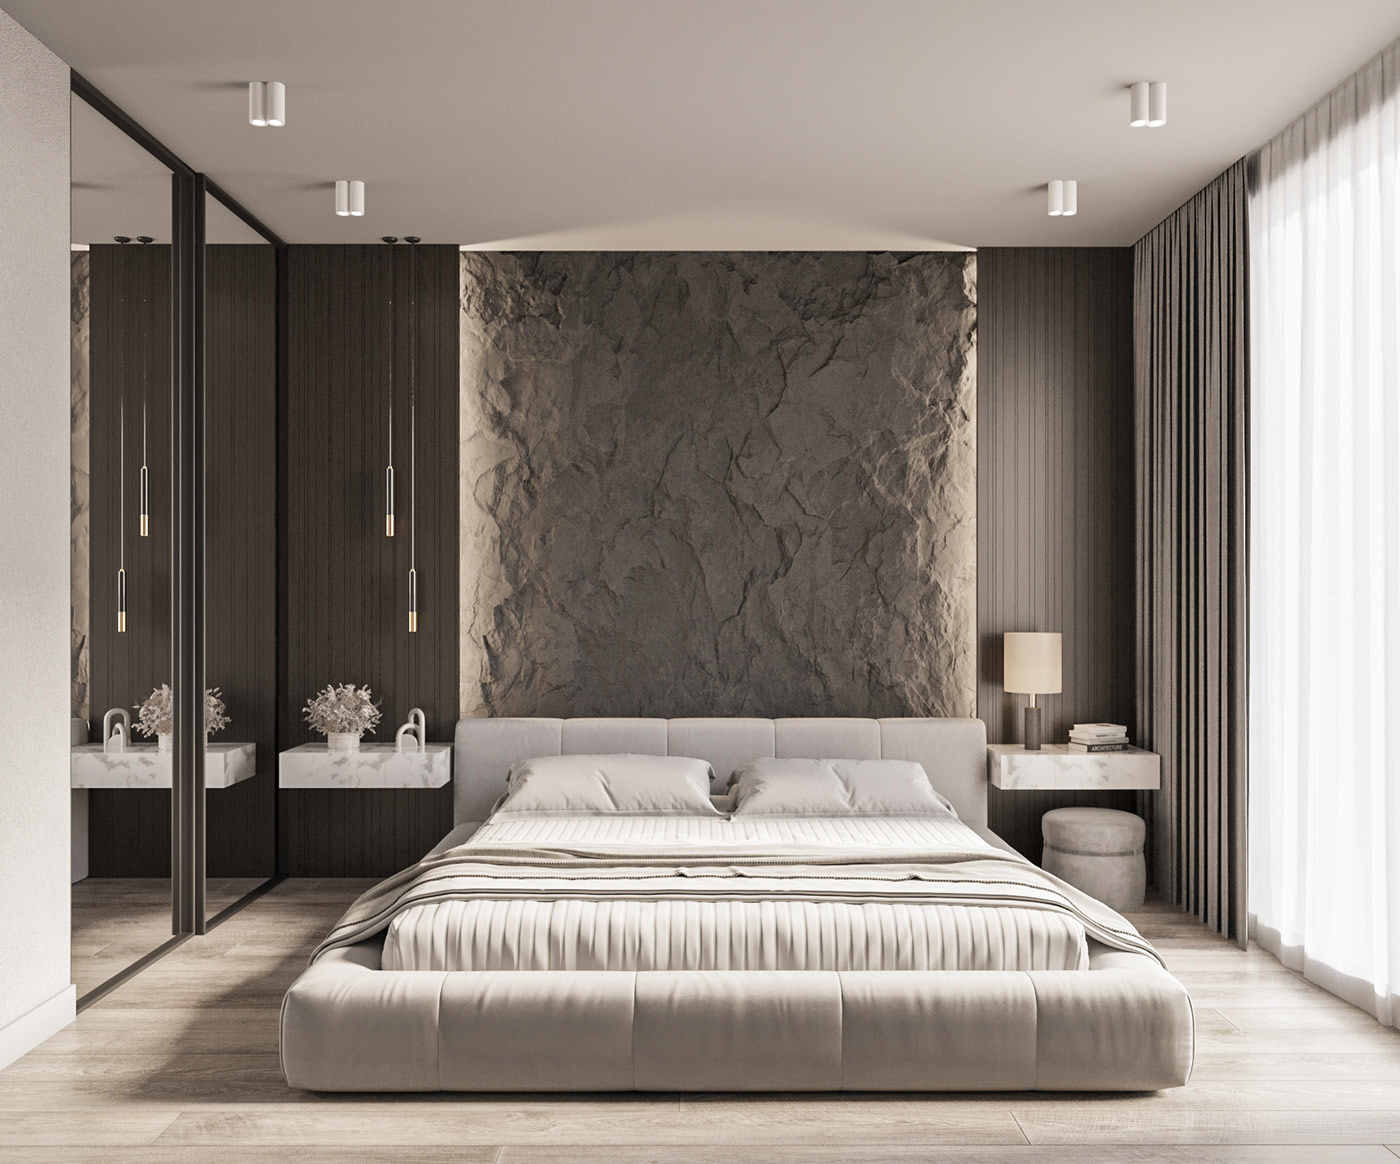  Bedroom design